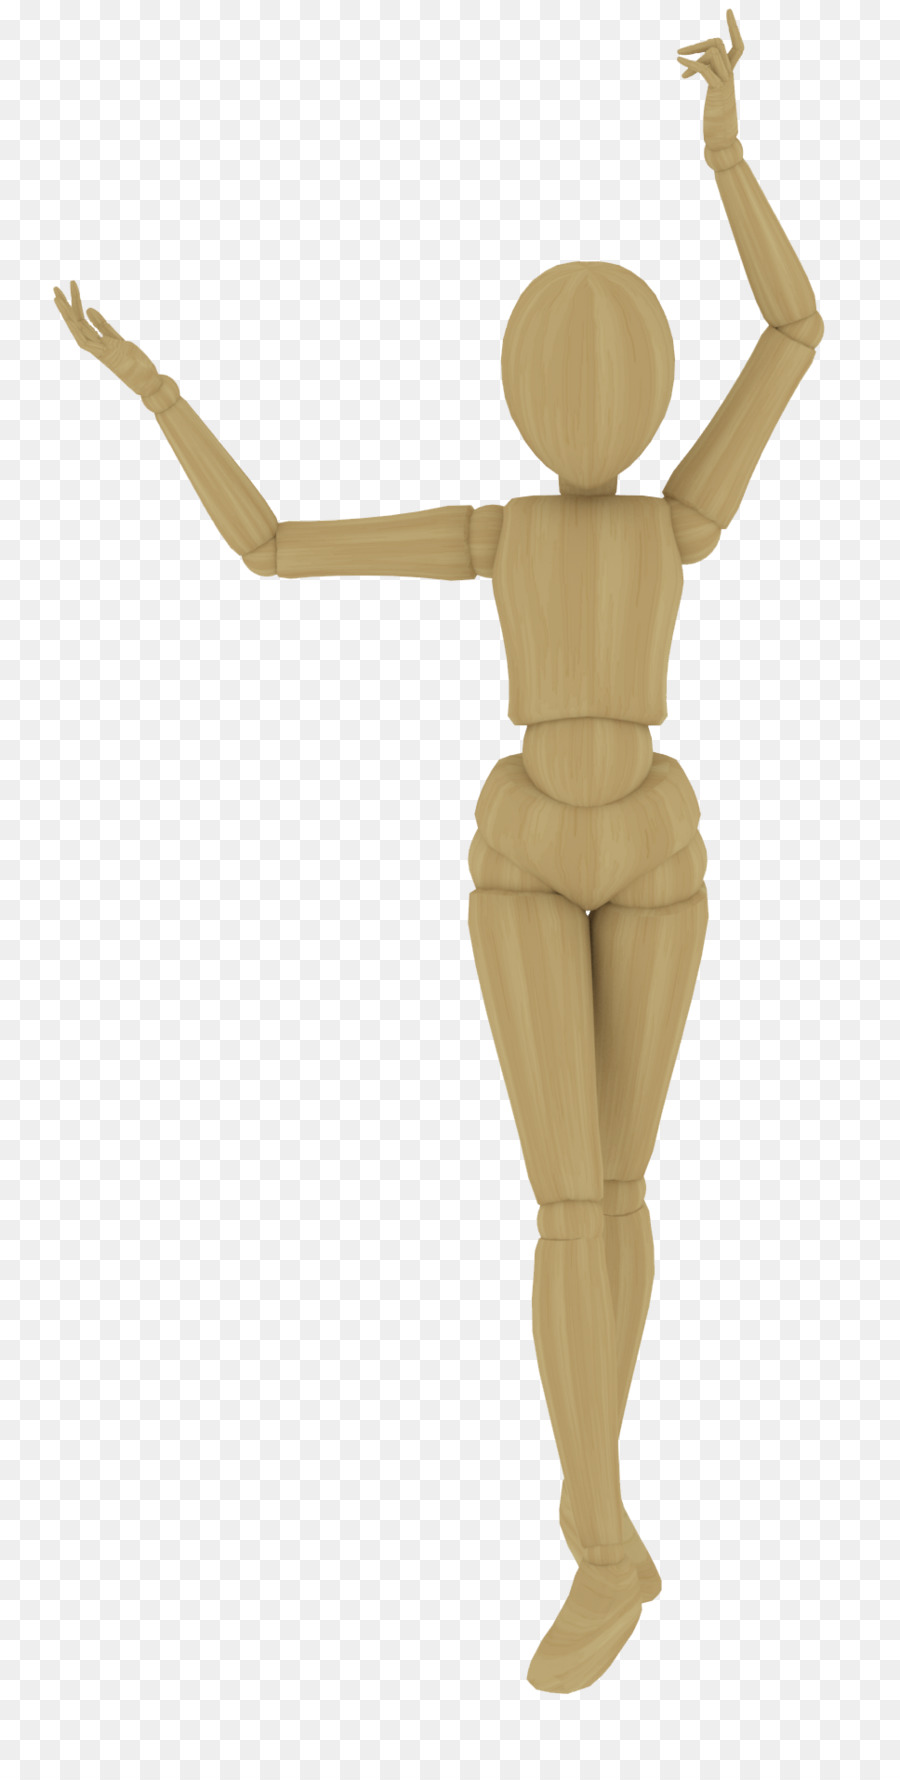 Manichino Peg bambola di legno Modello di Abbigliamento - Manichino